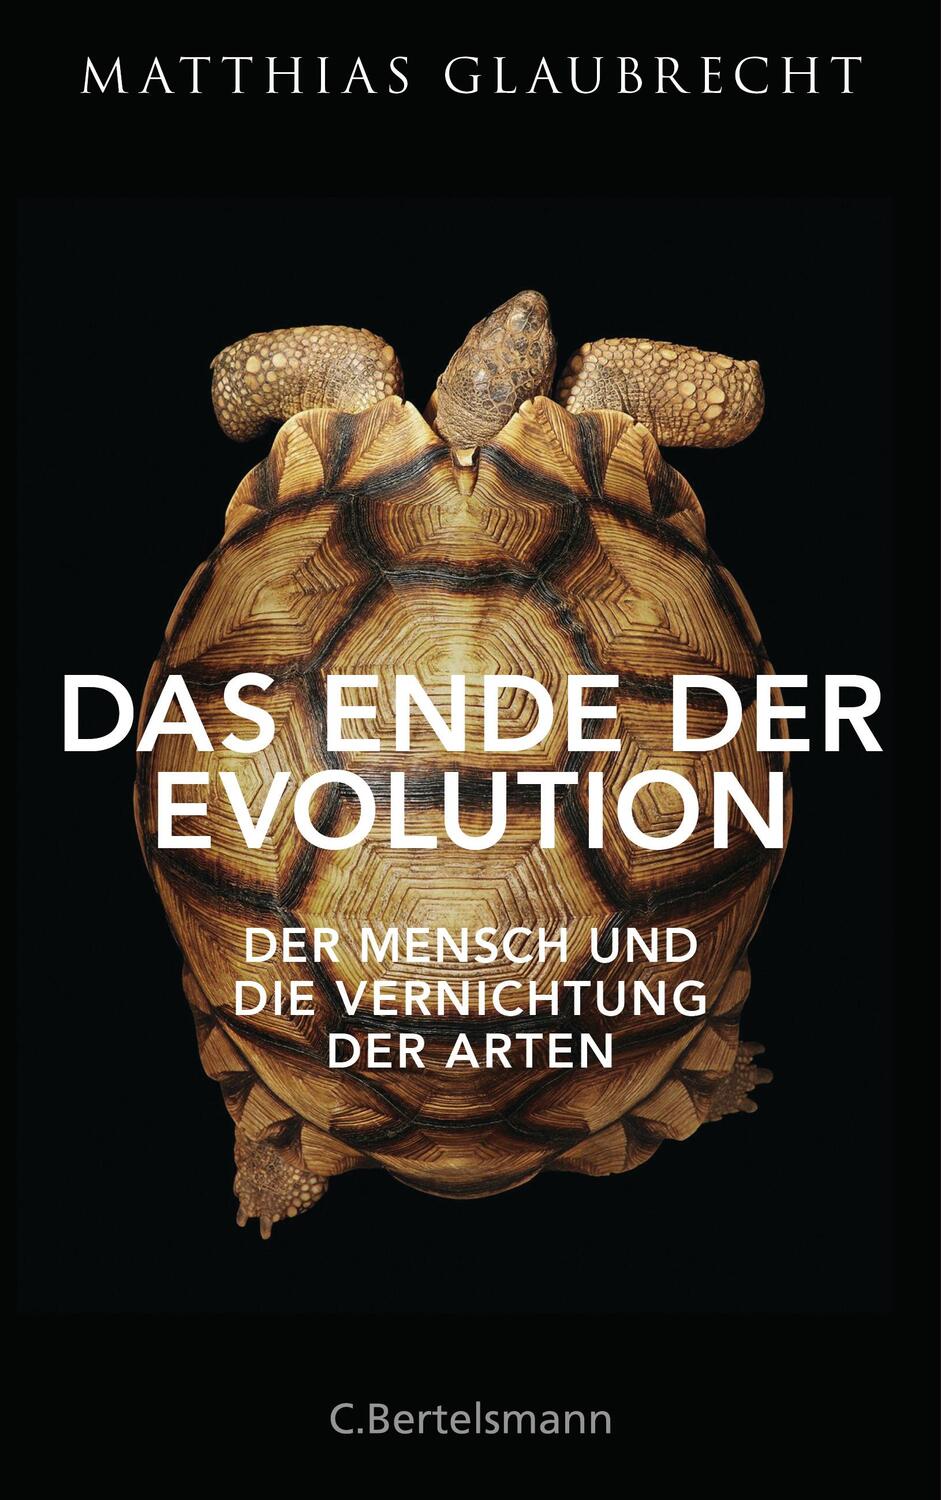 Das Ende der Evolution - Glaubrecht, Matthias